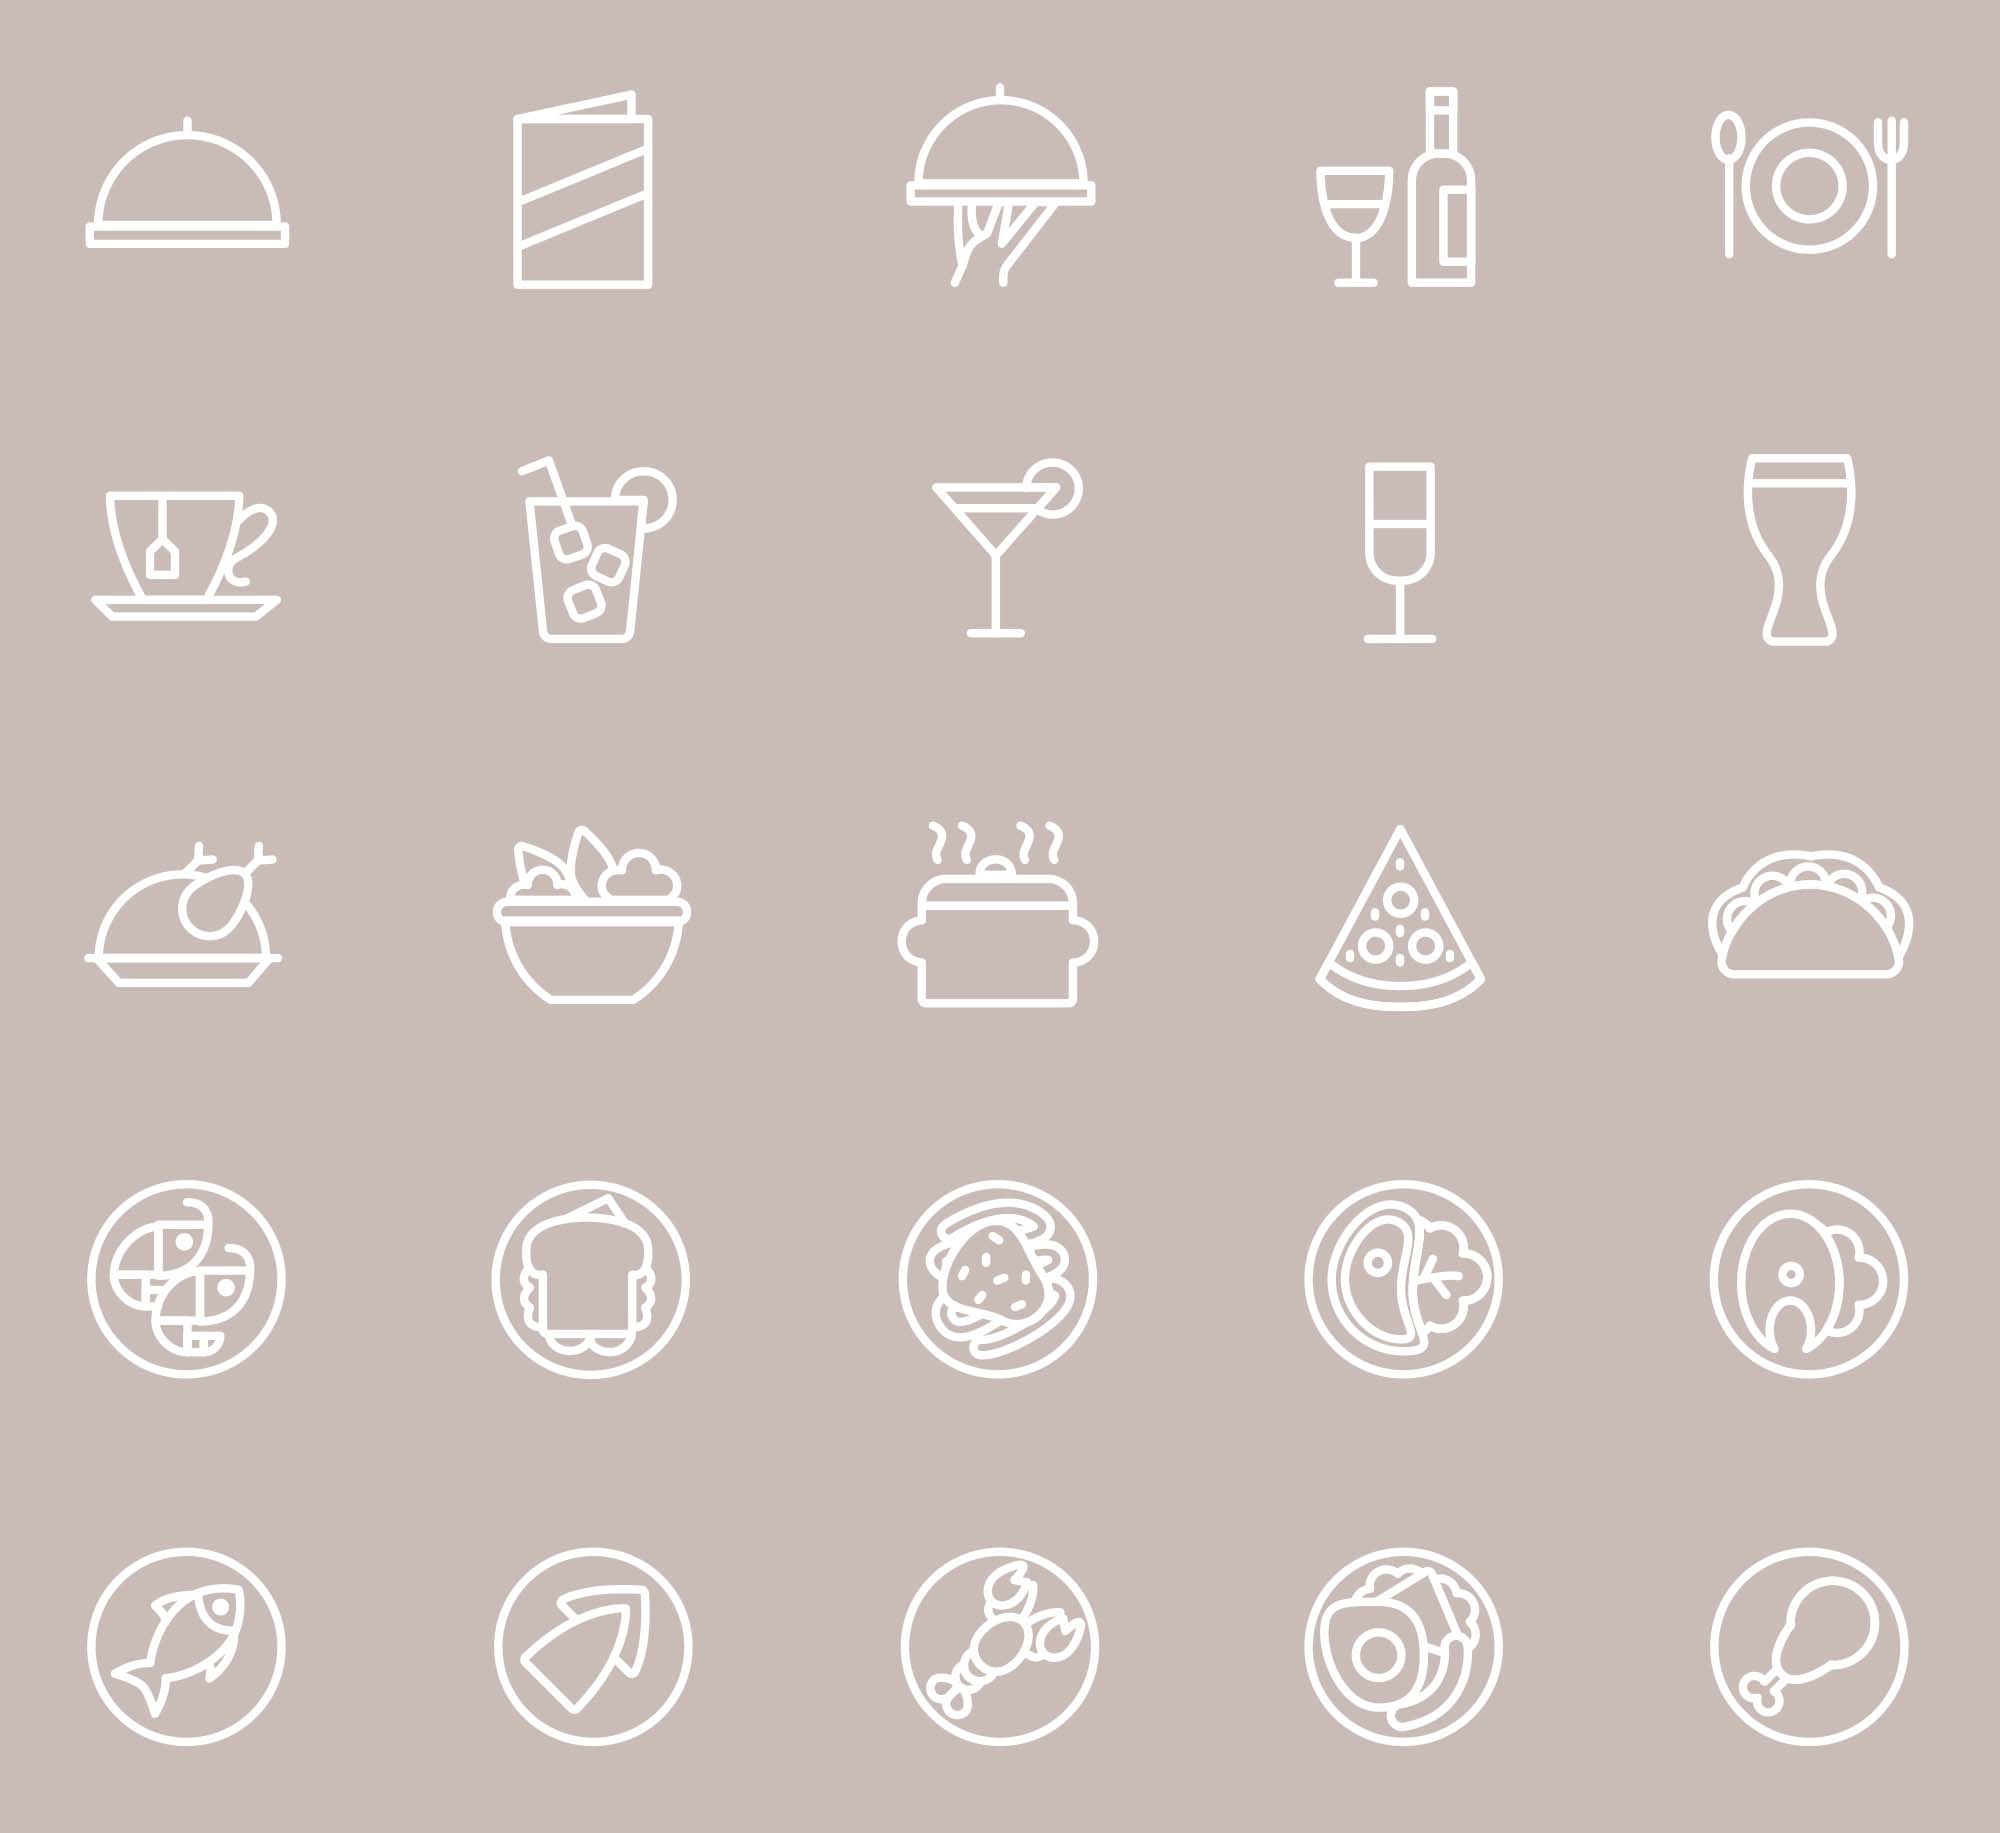 25枚餐厅菜单设计 可用的矢量线性第一素材精选图标 25 Restaurant Menu Icons插图(2)